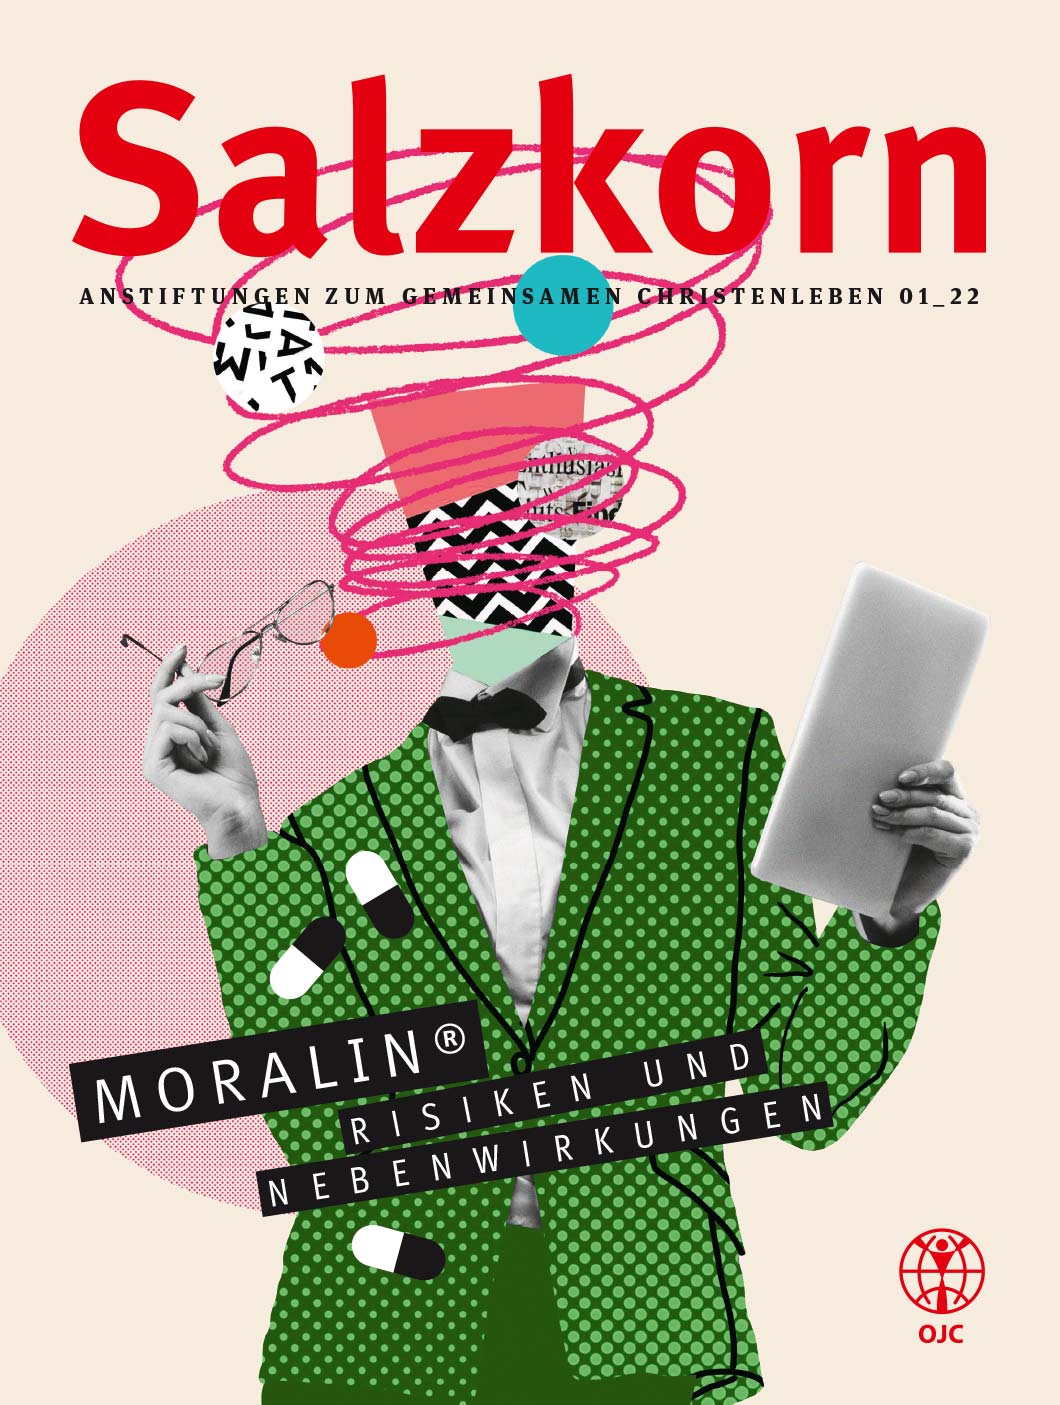 OJC-Salzkorn 2022, Magazin 1. Cover Design mit Pop Art Collage eines Kopflosen